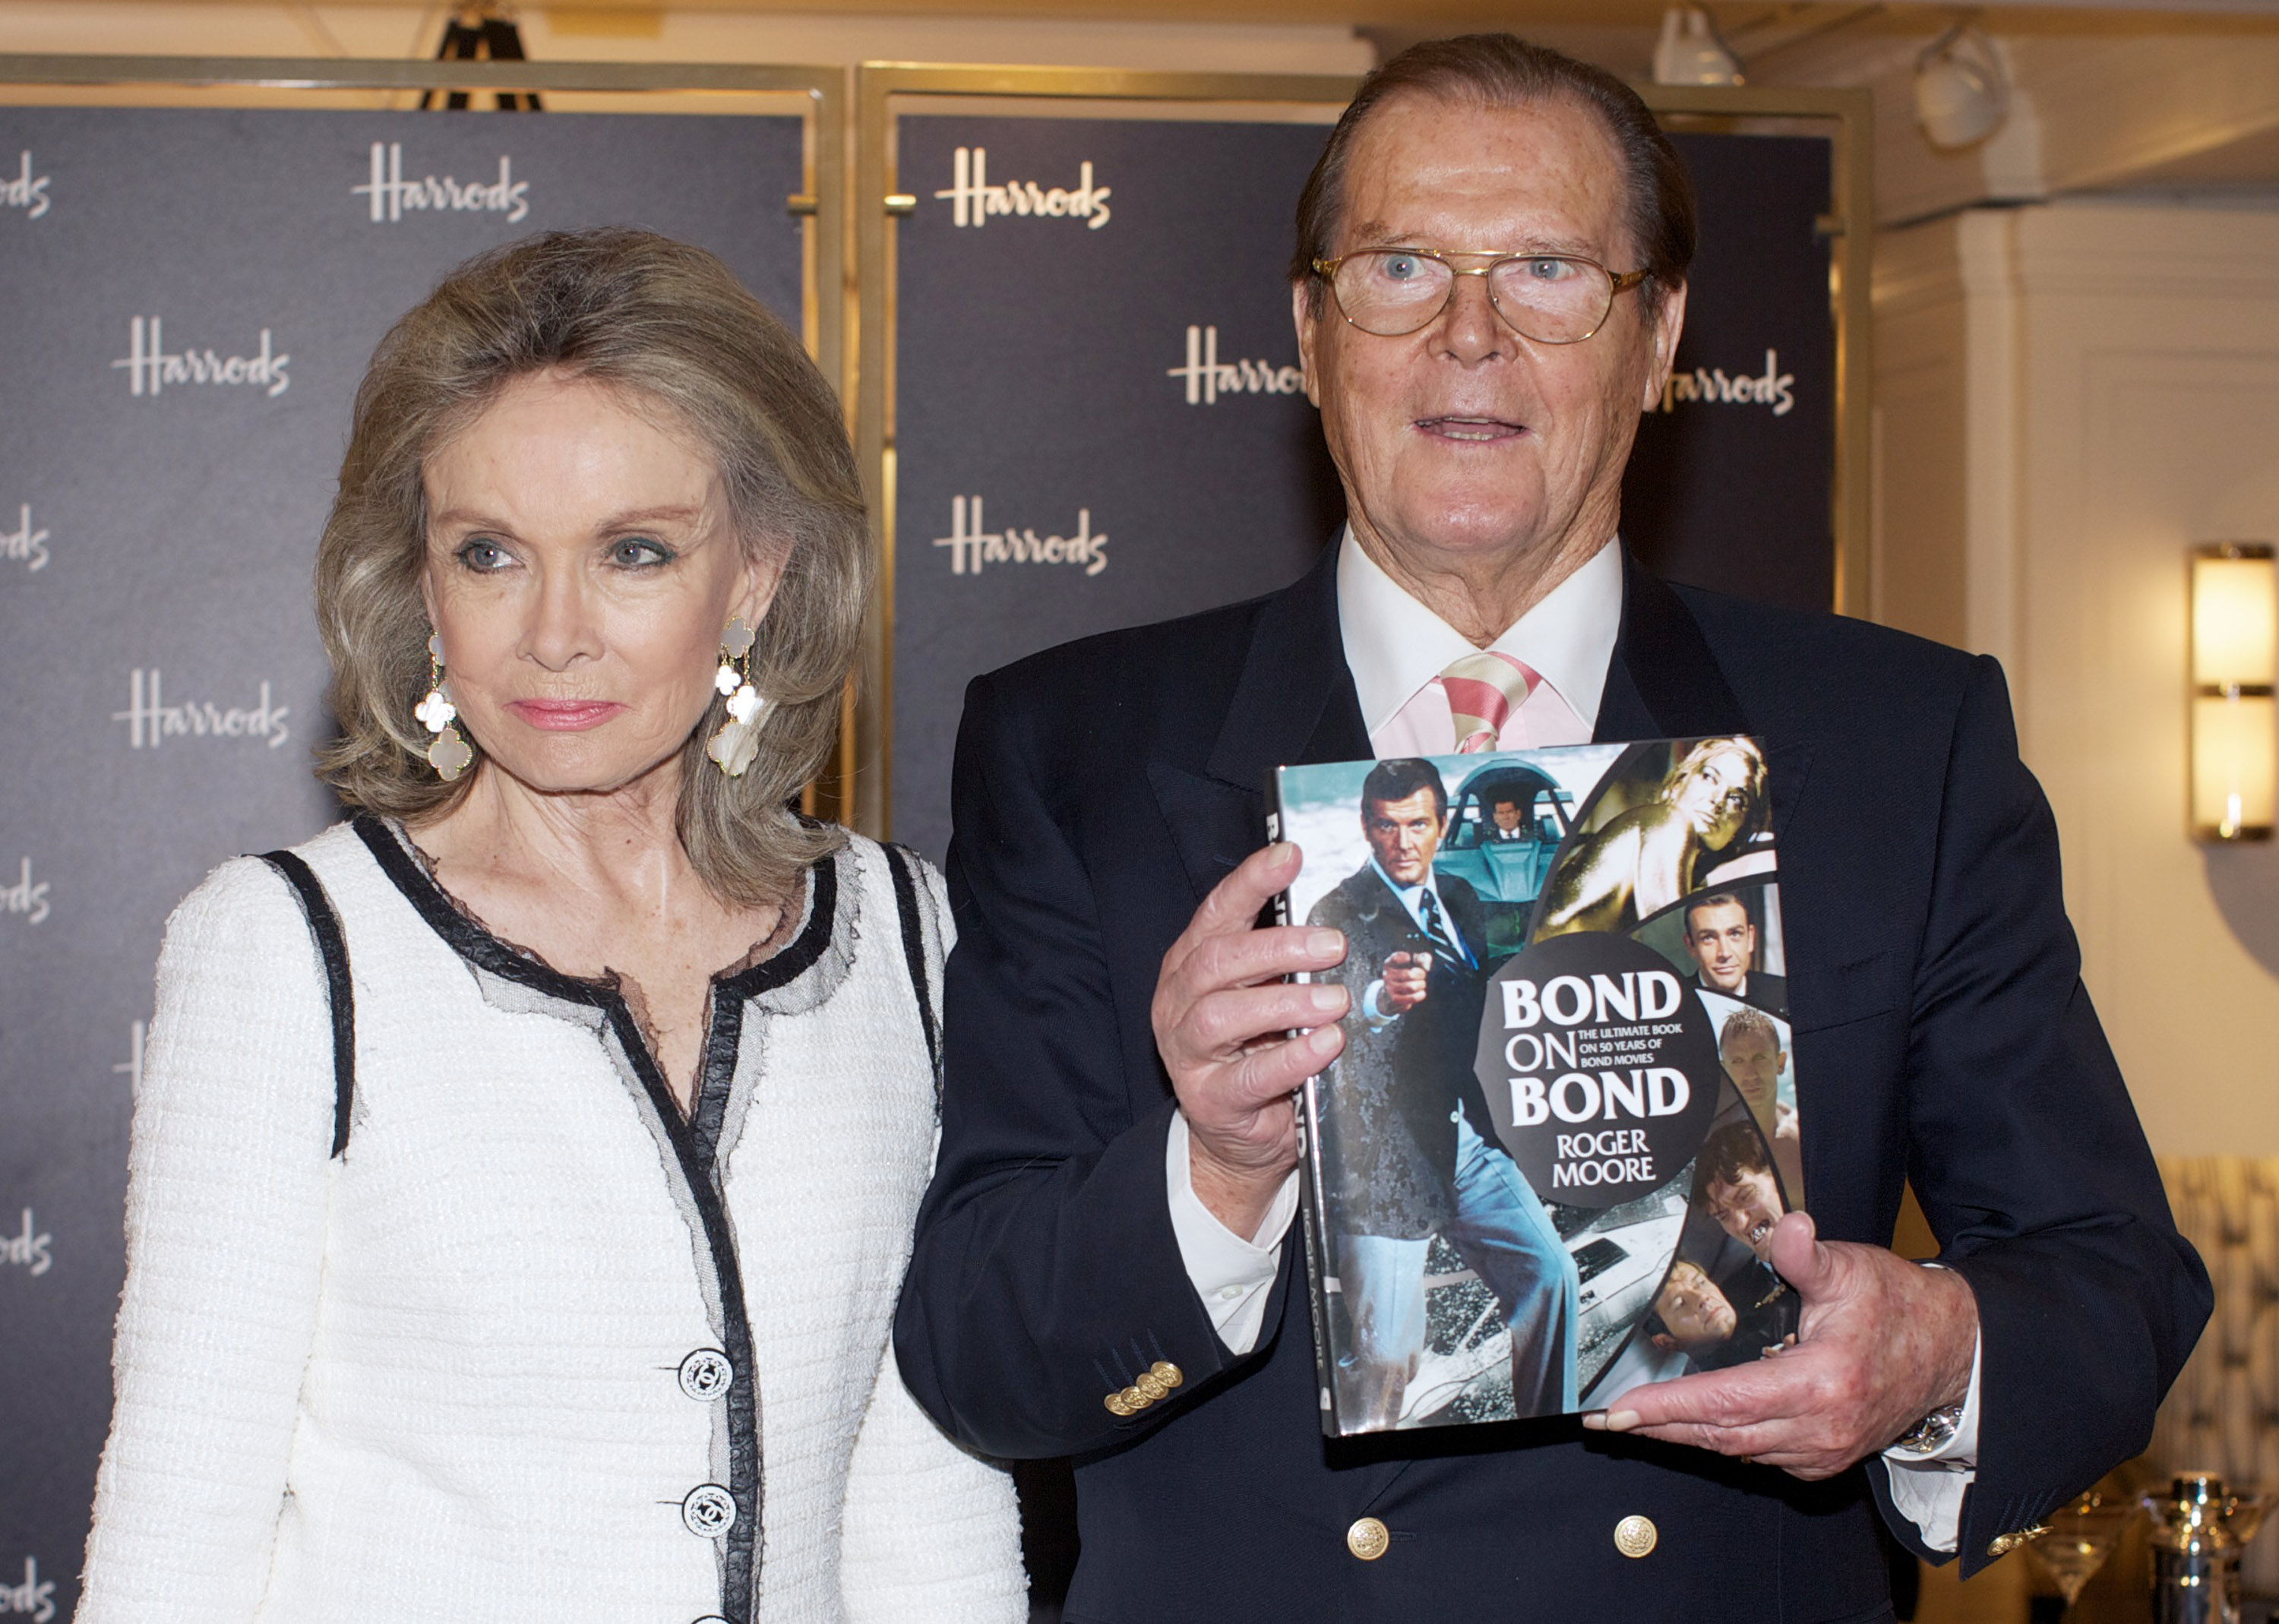 Роджър Мур, придружен от съпругата си, представя книгата си ”Бонд за Бонд” (2012)